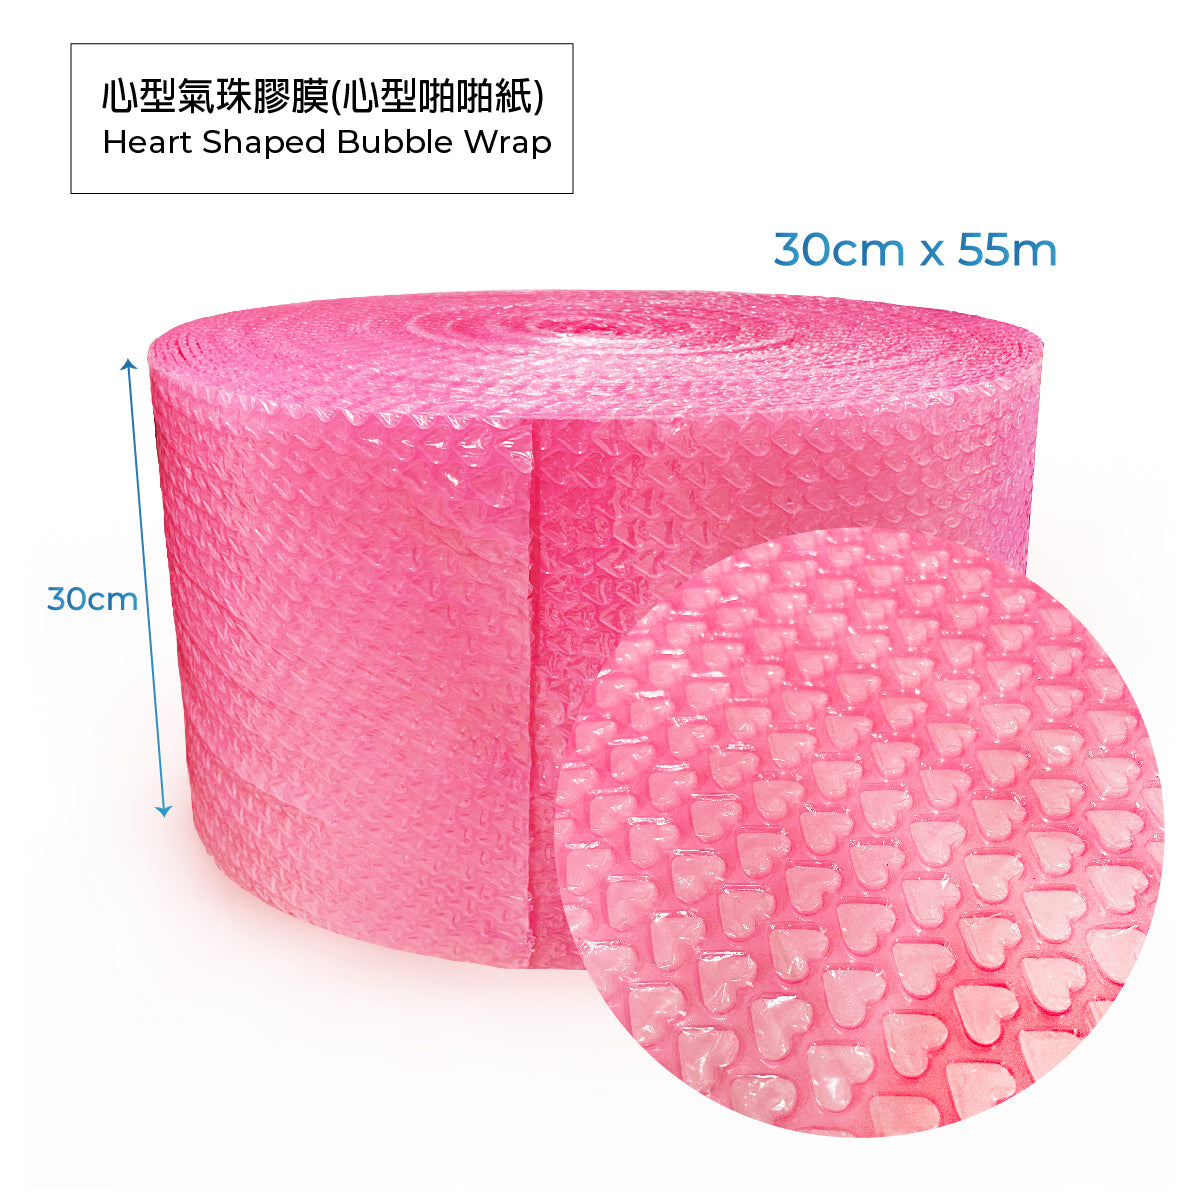 Bubble Wrap 透明氣珠膠膜(啪啪紙)